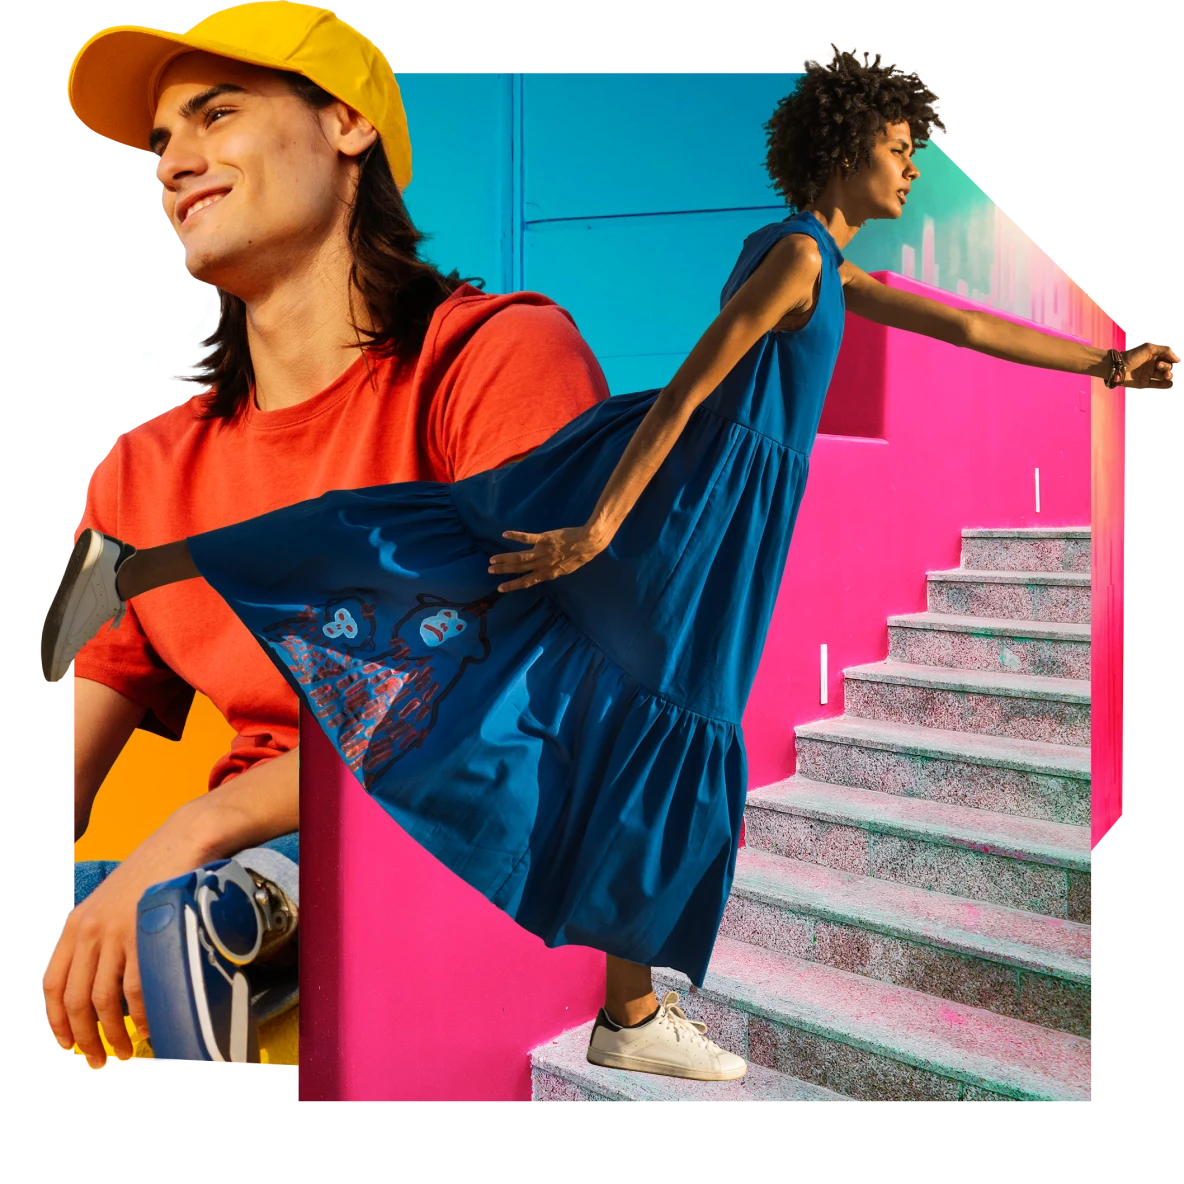 Ein weißer Mann mit Beinprothesen und langen dunklen Haaren trägt eine knallgelbe Baseballkappe und ein orangefarbenes T-Shirt. Eine Schwarze Frau in einem luftigen blauen Kleid steigt graue Treppen in einem pinken Treppenhaus hinauf. Der Hintergrund ist blau.